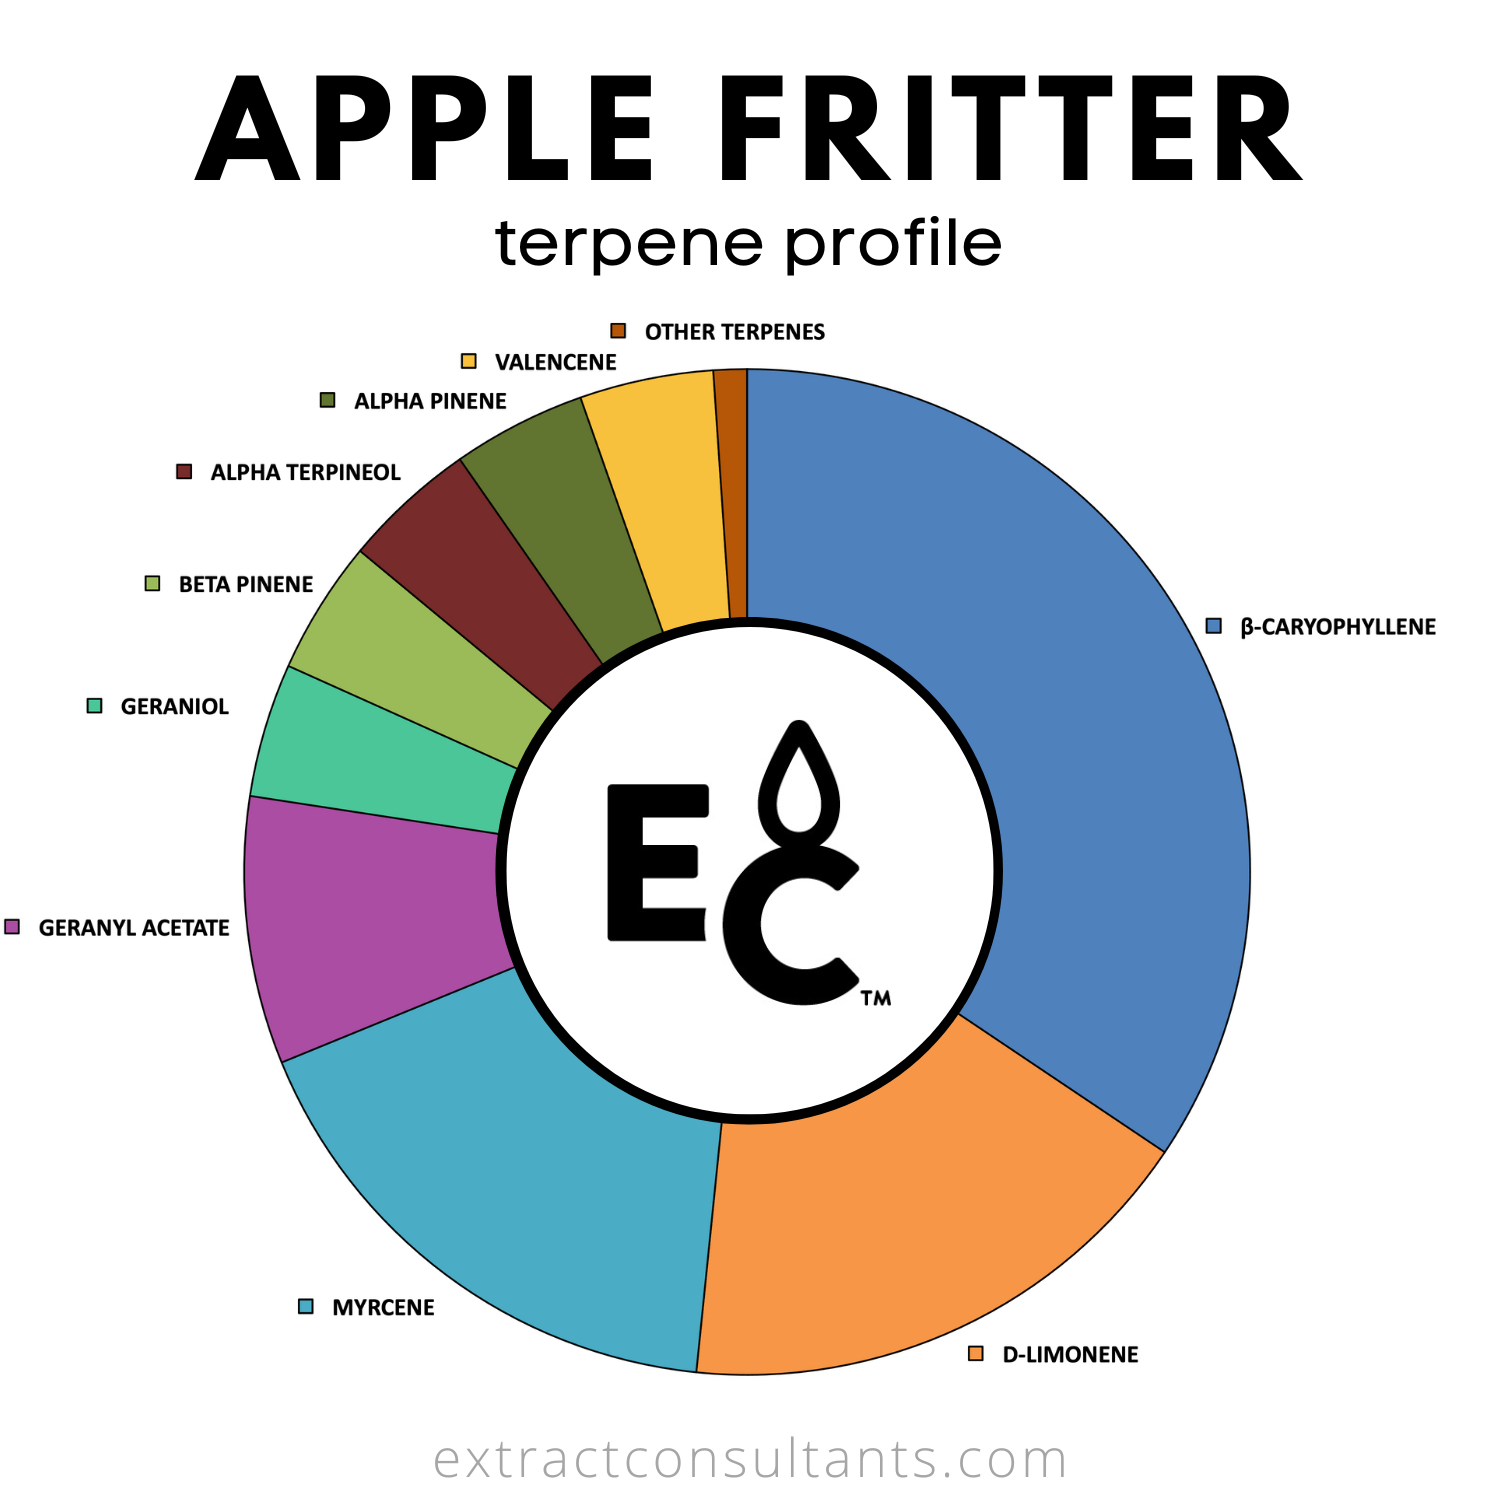 Apple Fritter Solvent Free Terpene Flavor